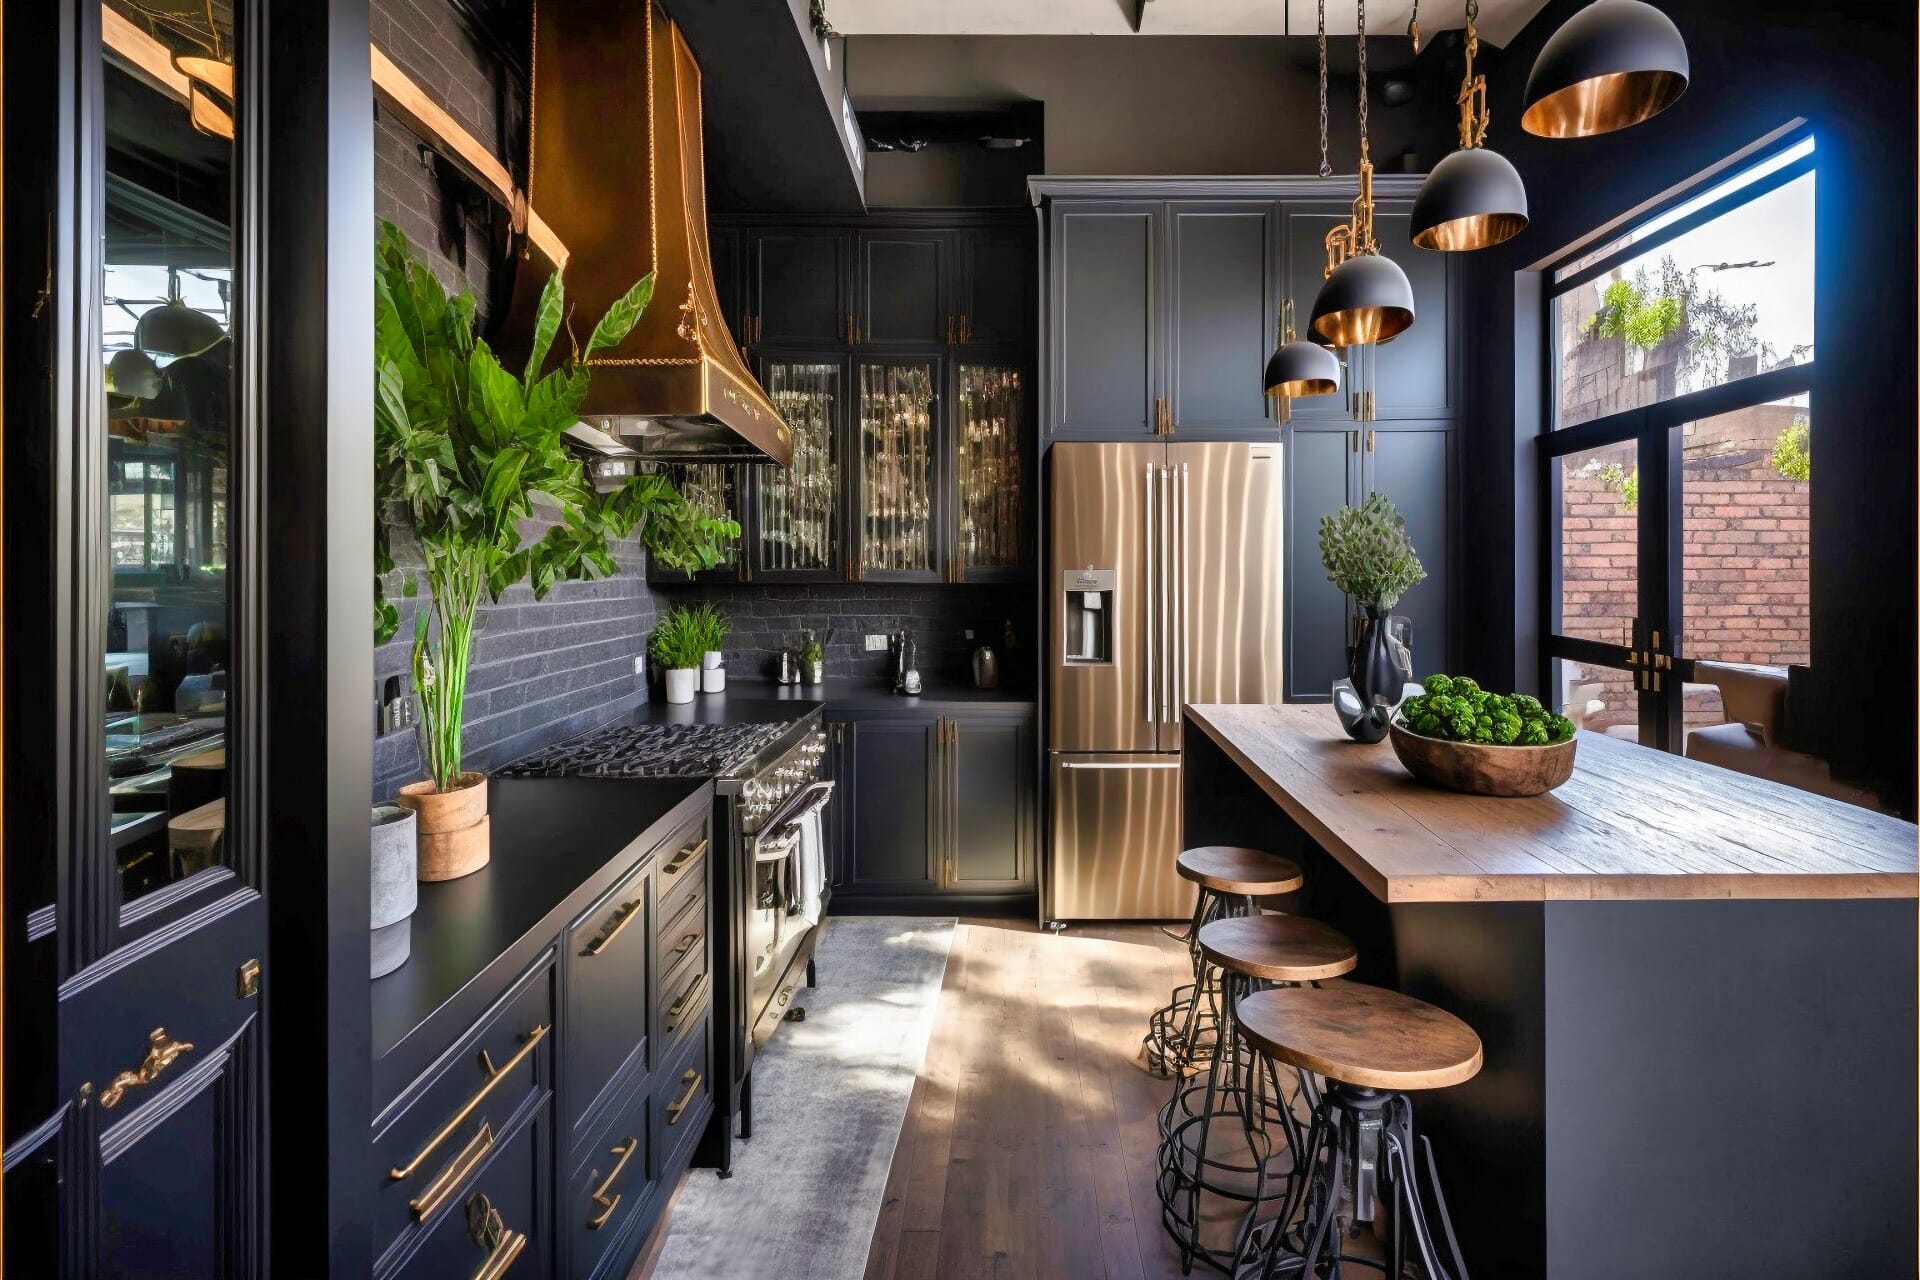 Schwarze Küche Mit Urbanem Flair, Holz Und Beton